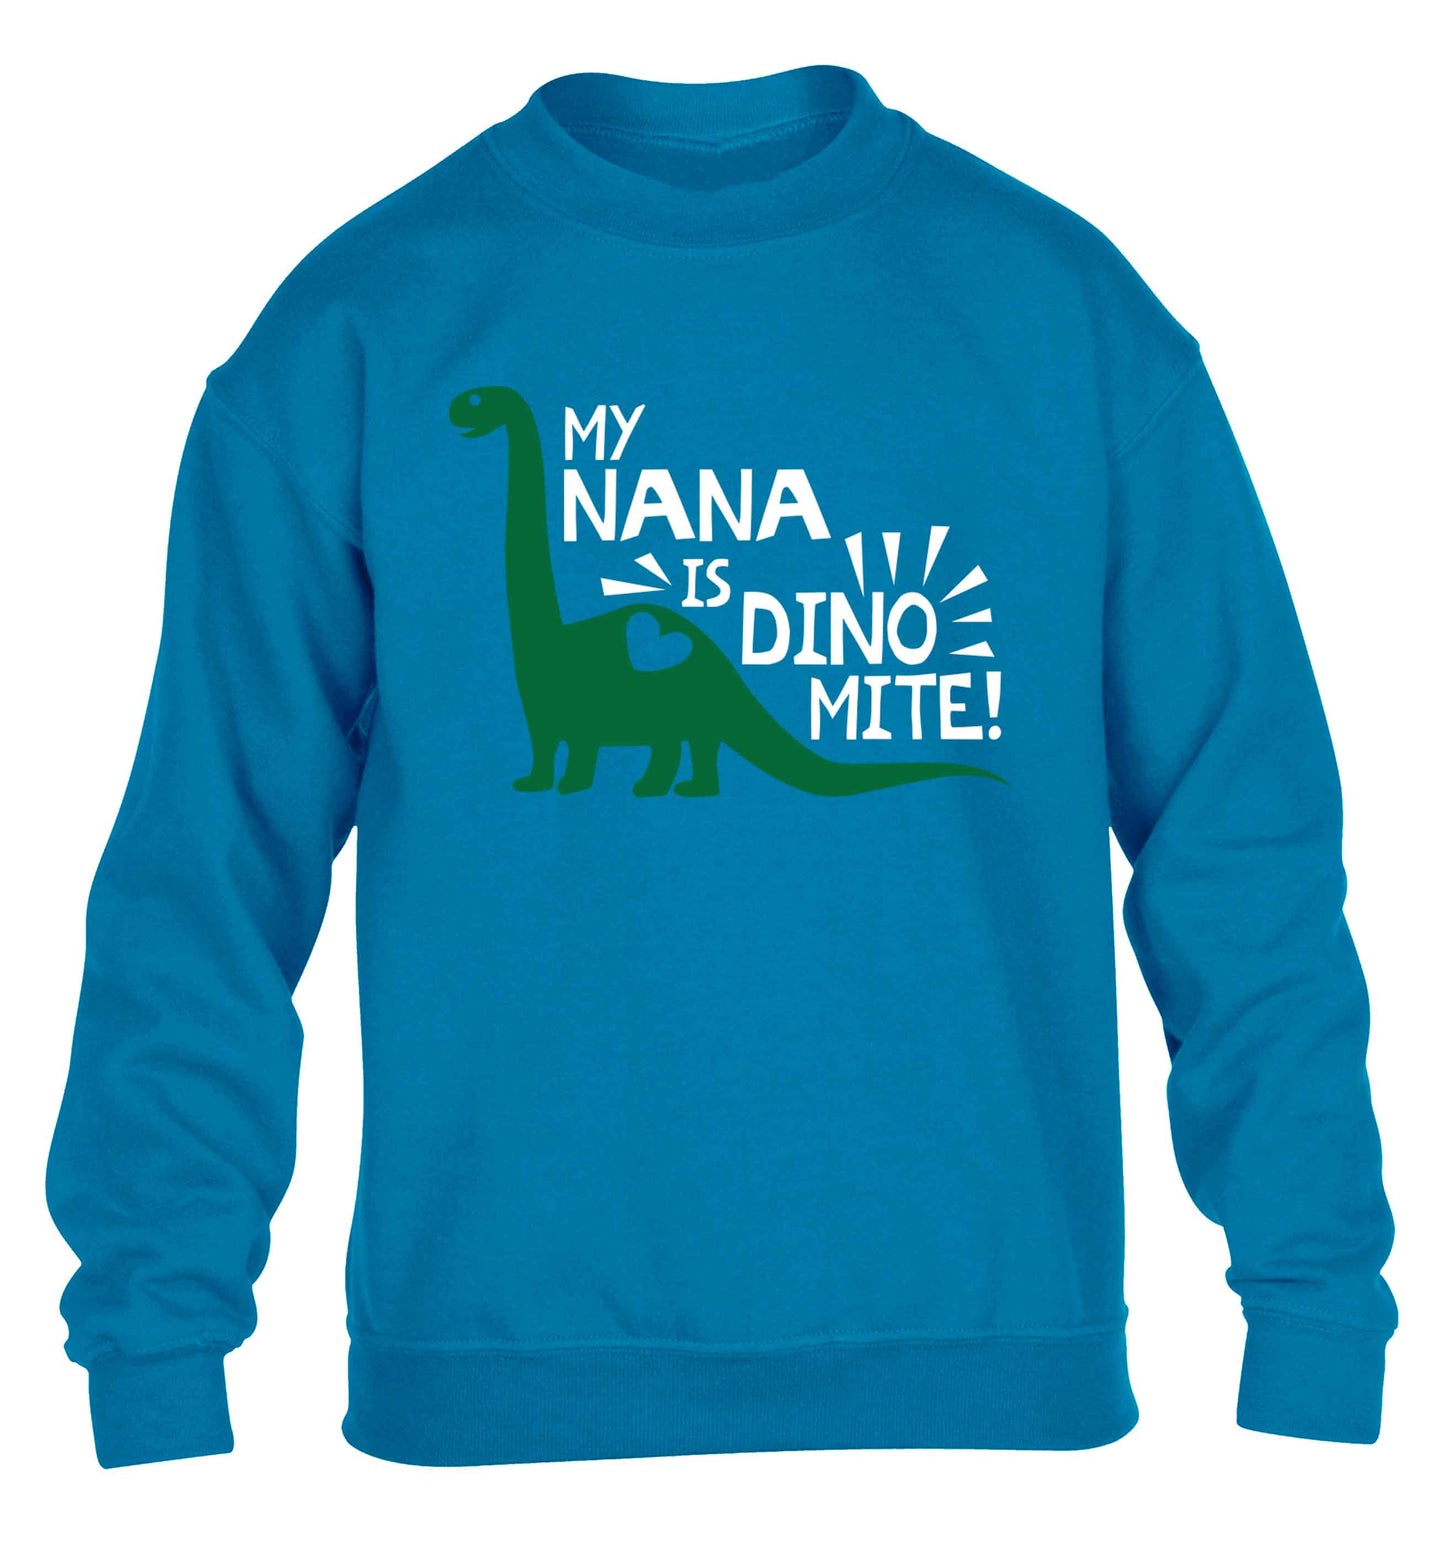 My nana is dinomite! children's blue sweater 12-13 Years